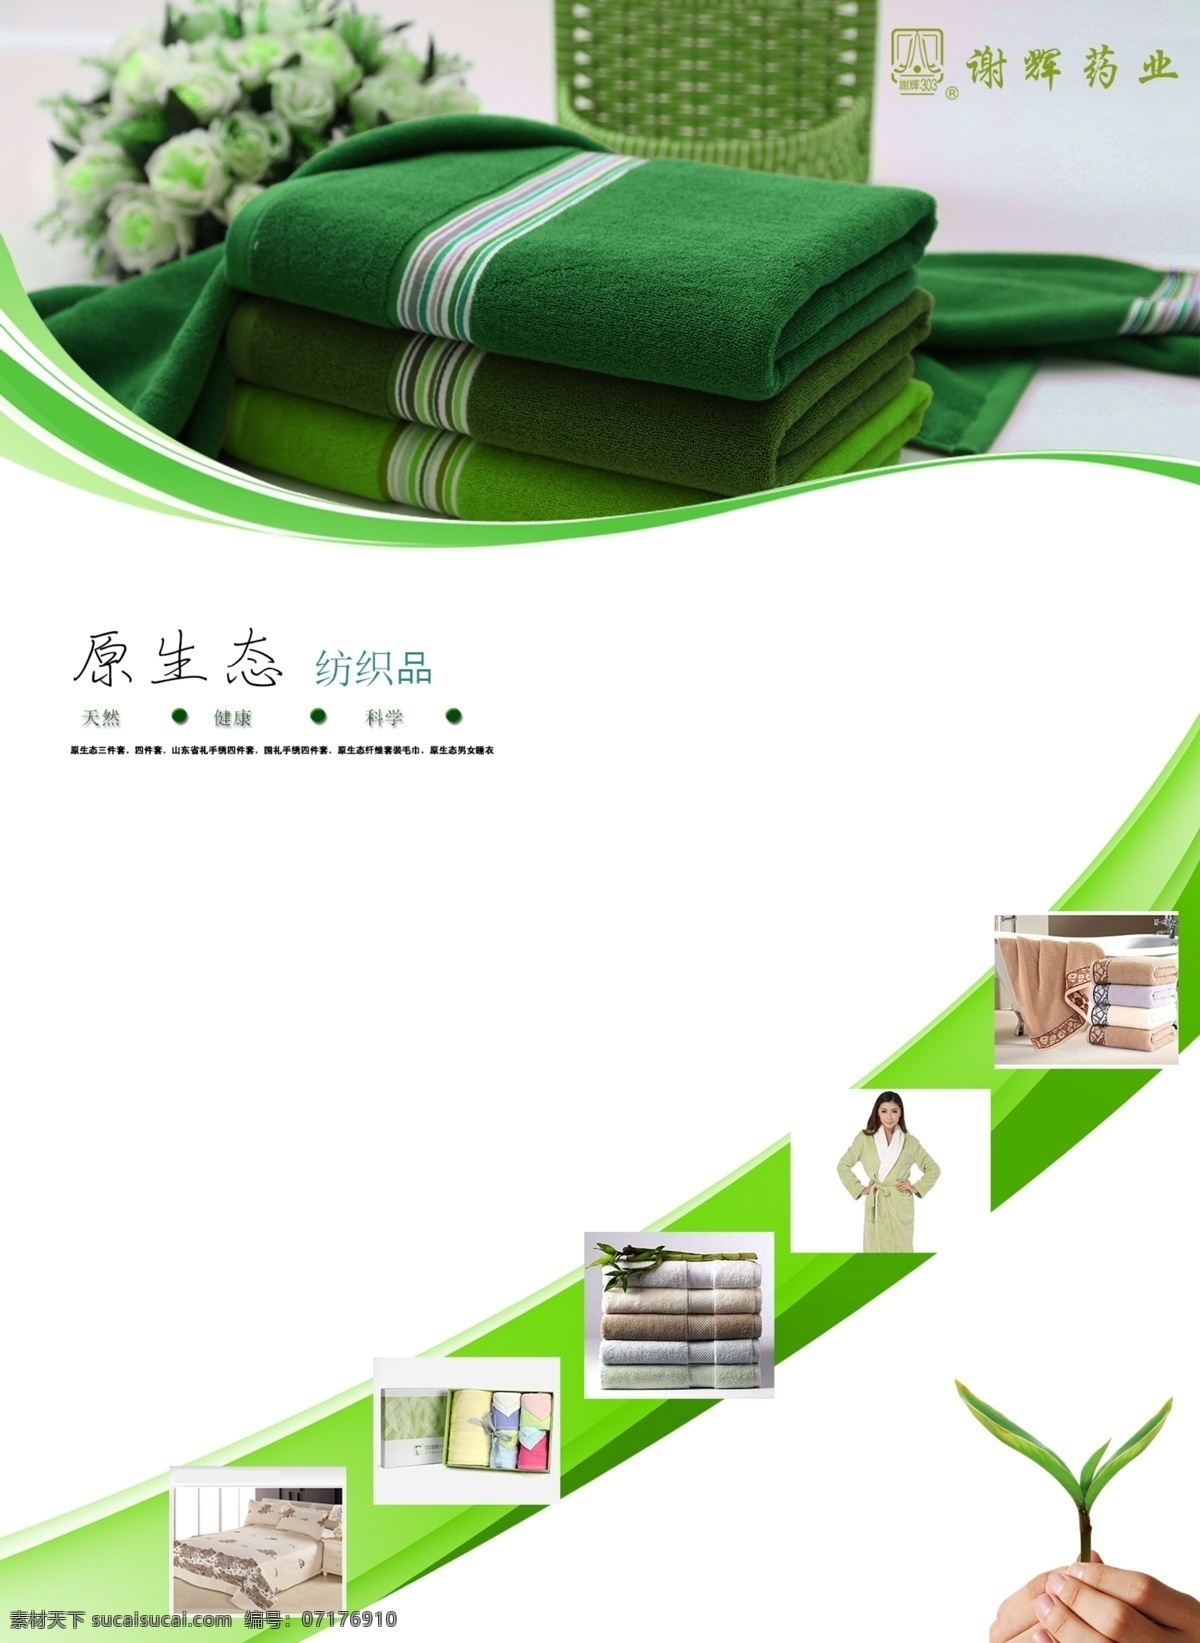 产品展板 绿色产品展板 展板 绿色展板 清新展板 清新 绿色清新 原生态纺织品 纺织品 展板模板